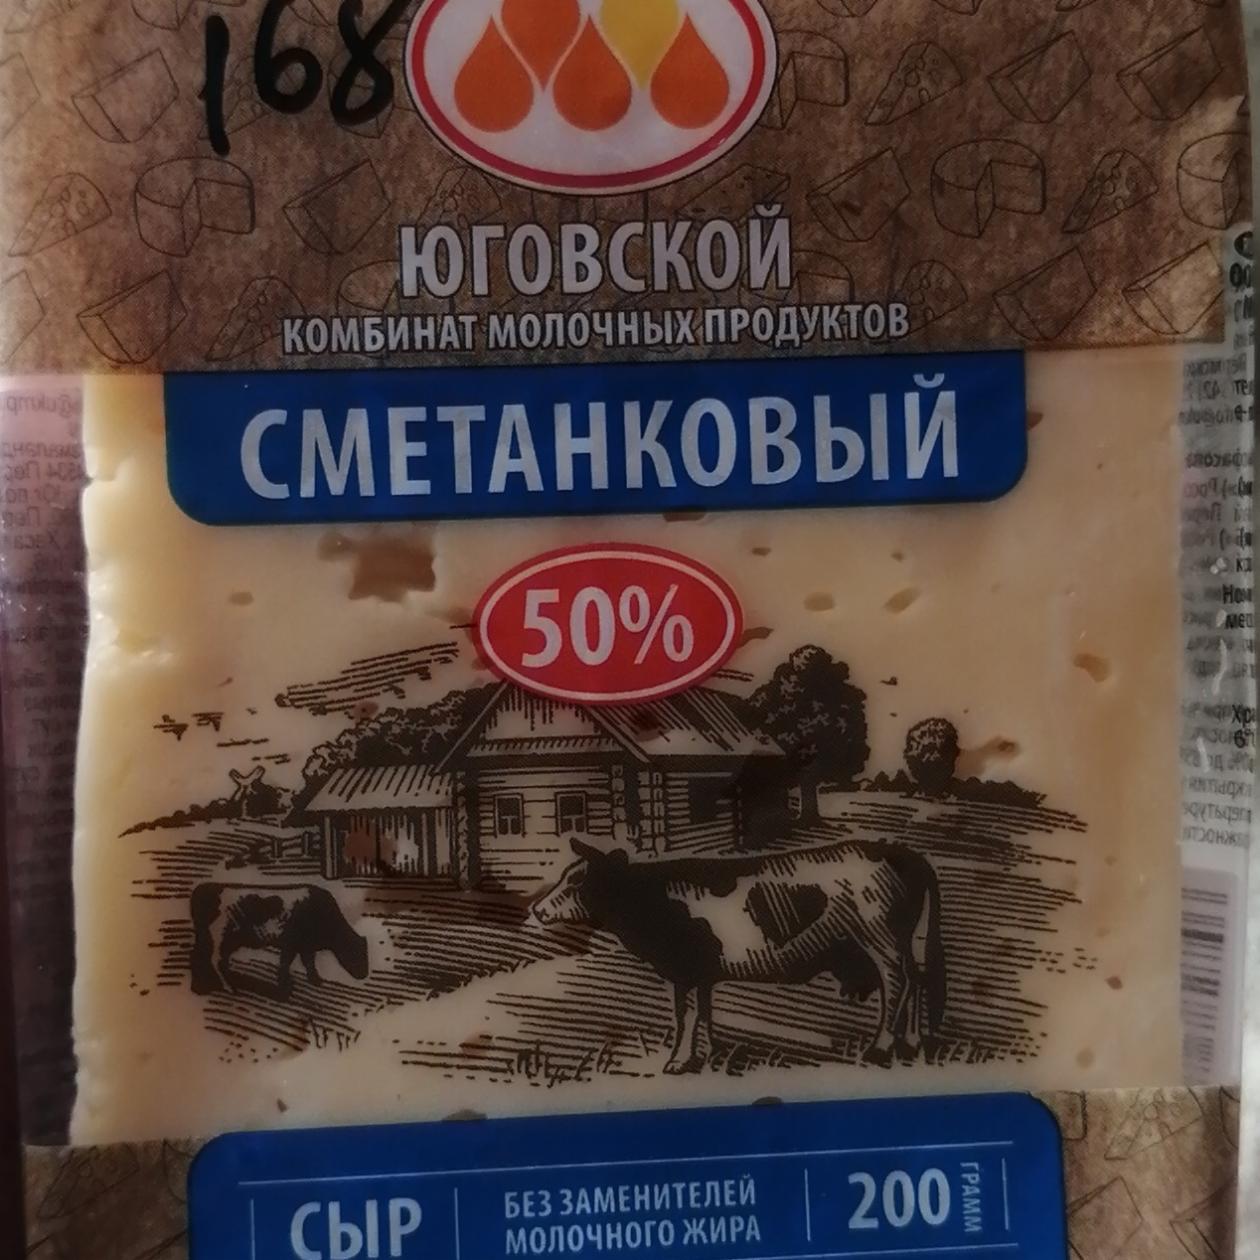 Фото - сырсливочный 50% Юговский комбинат молочных продуктов